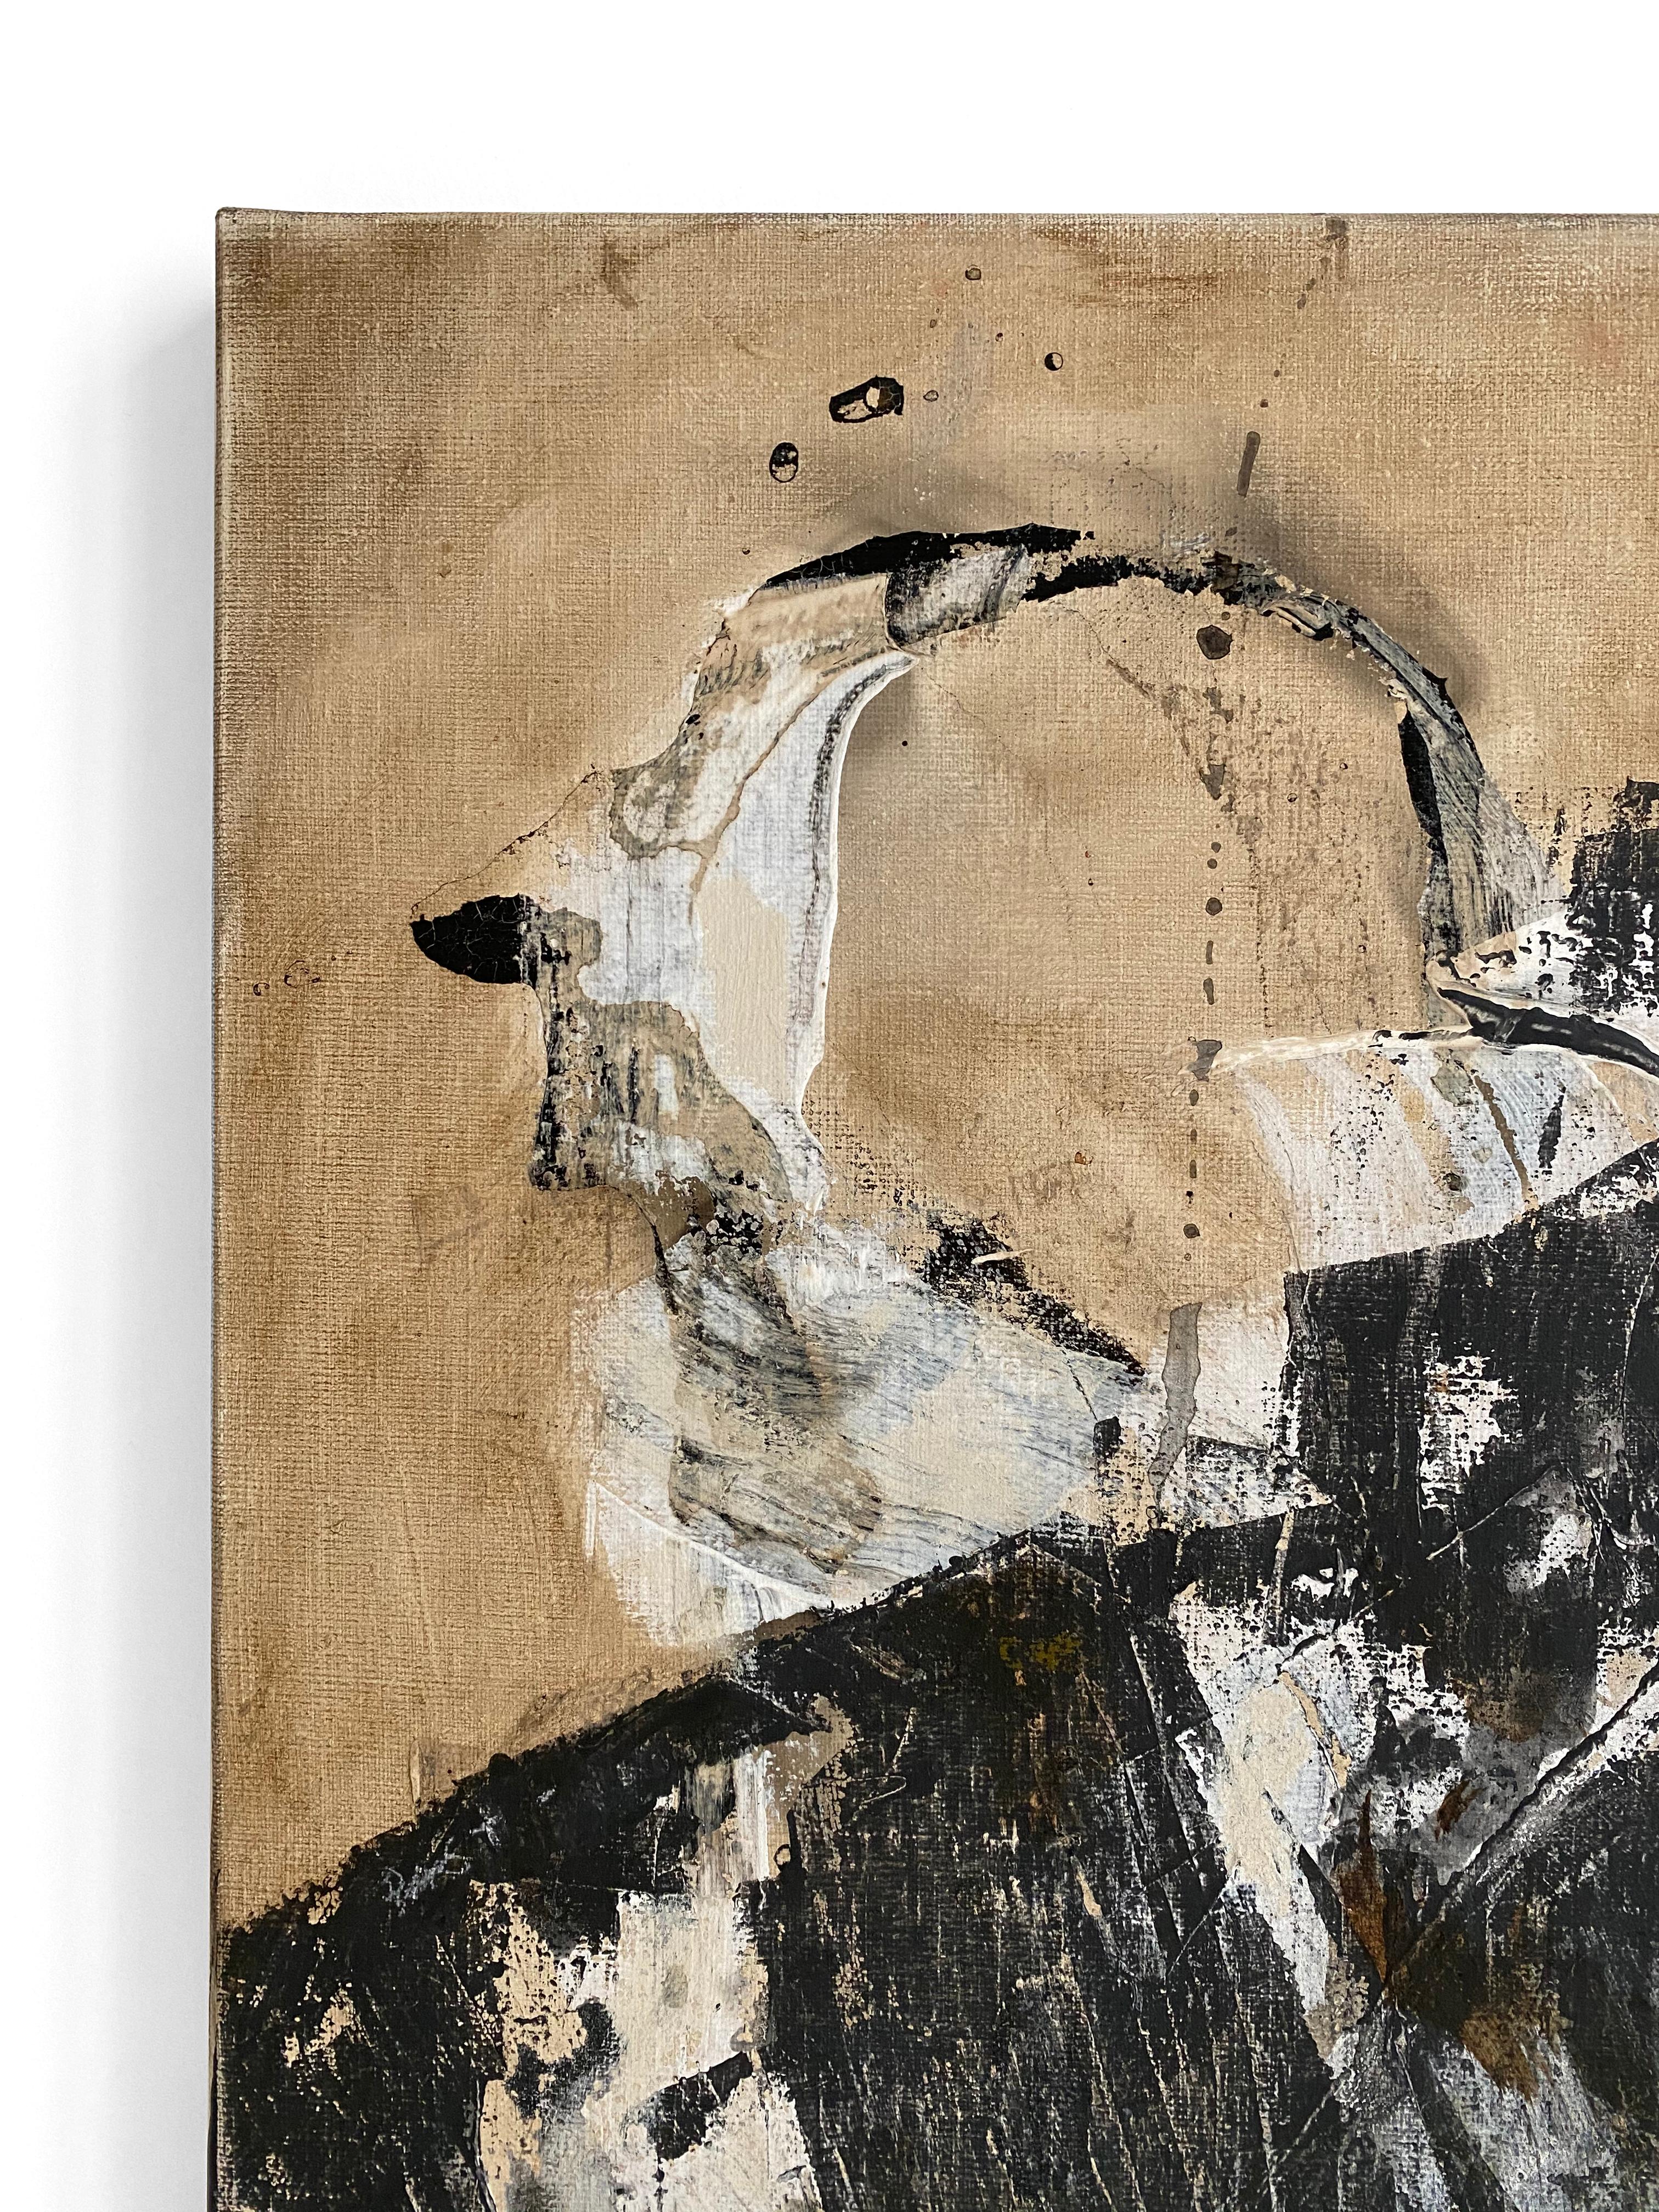 EIN DRINGENDER MANN
2020
Paris, Frankreich

Öl und Acryl auf Leinwand zeigen einen Mann, der versucht, den schweren Panzer seiner Verpflichtungen und seiner Persönlichkeit abzulegen. Eine sehr lose Anspielung auf die Figur aus René Magrittes Gemälde